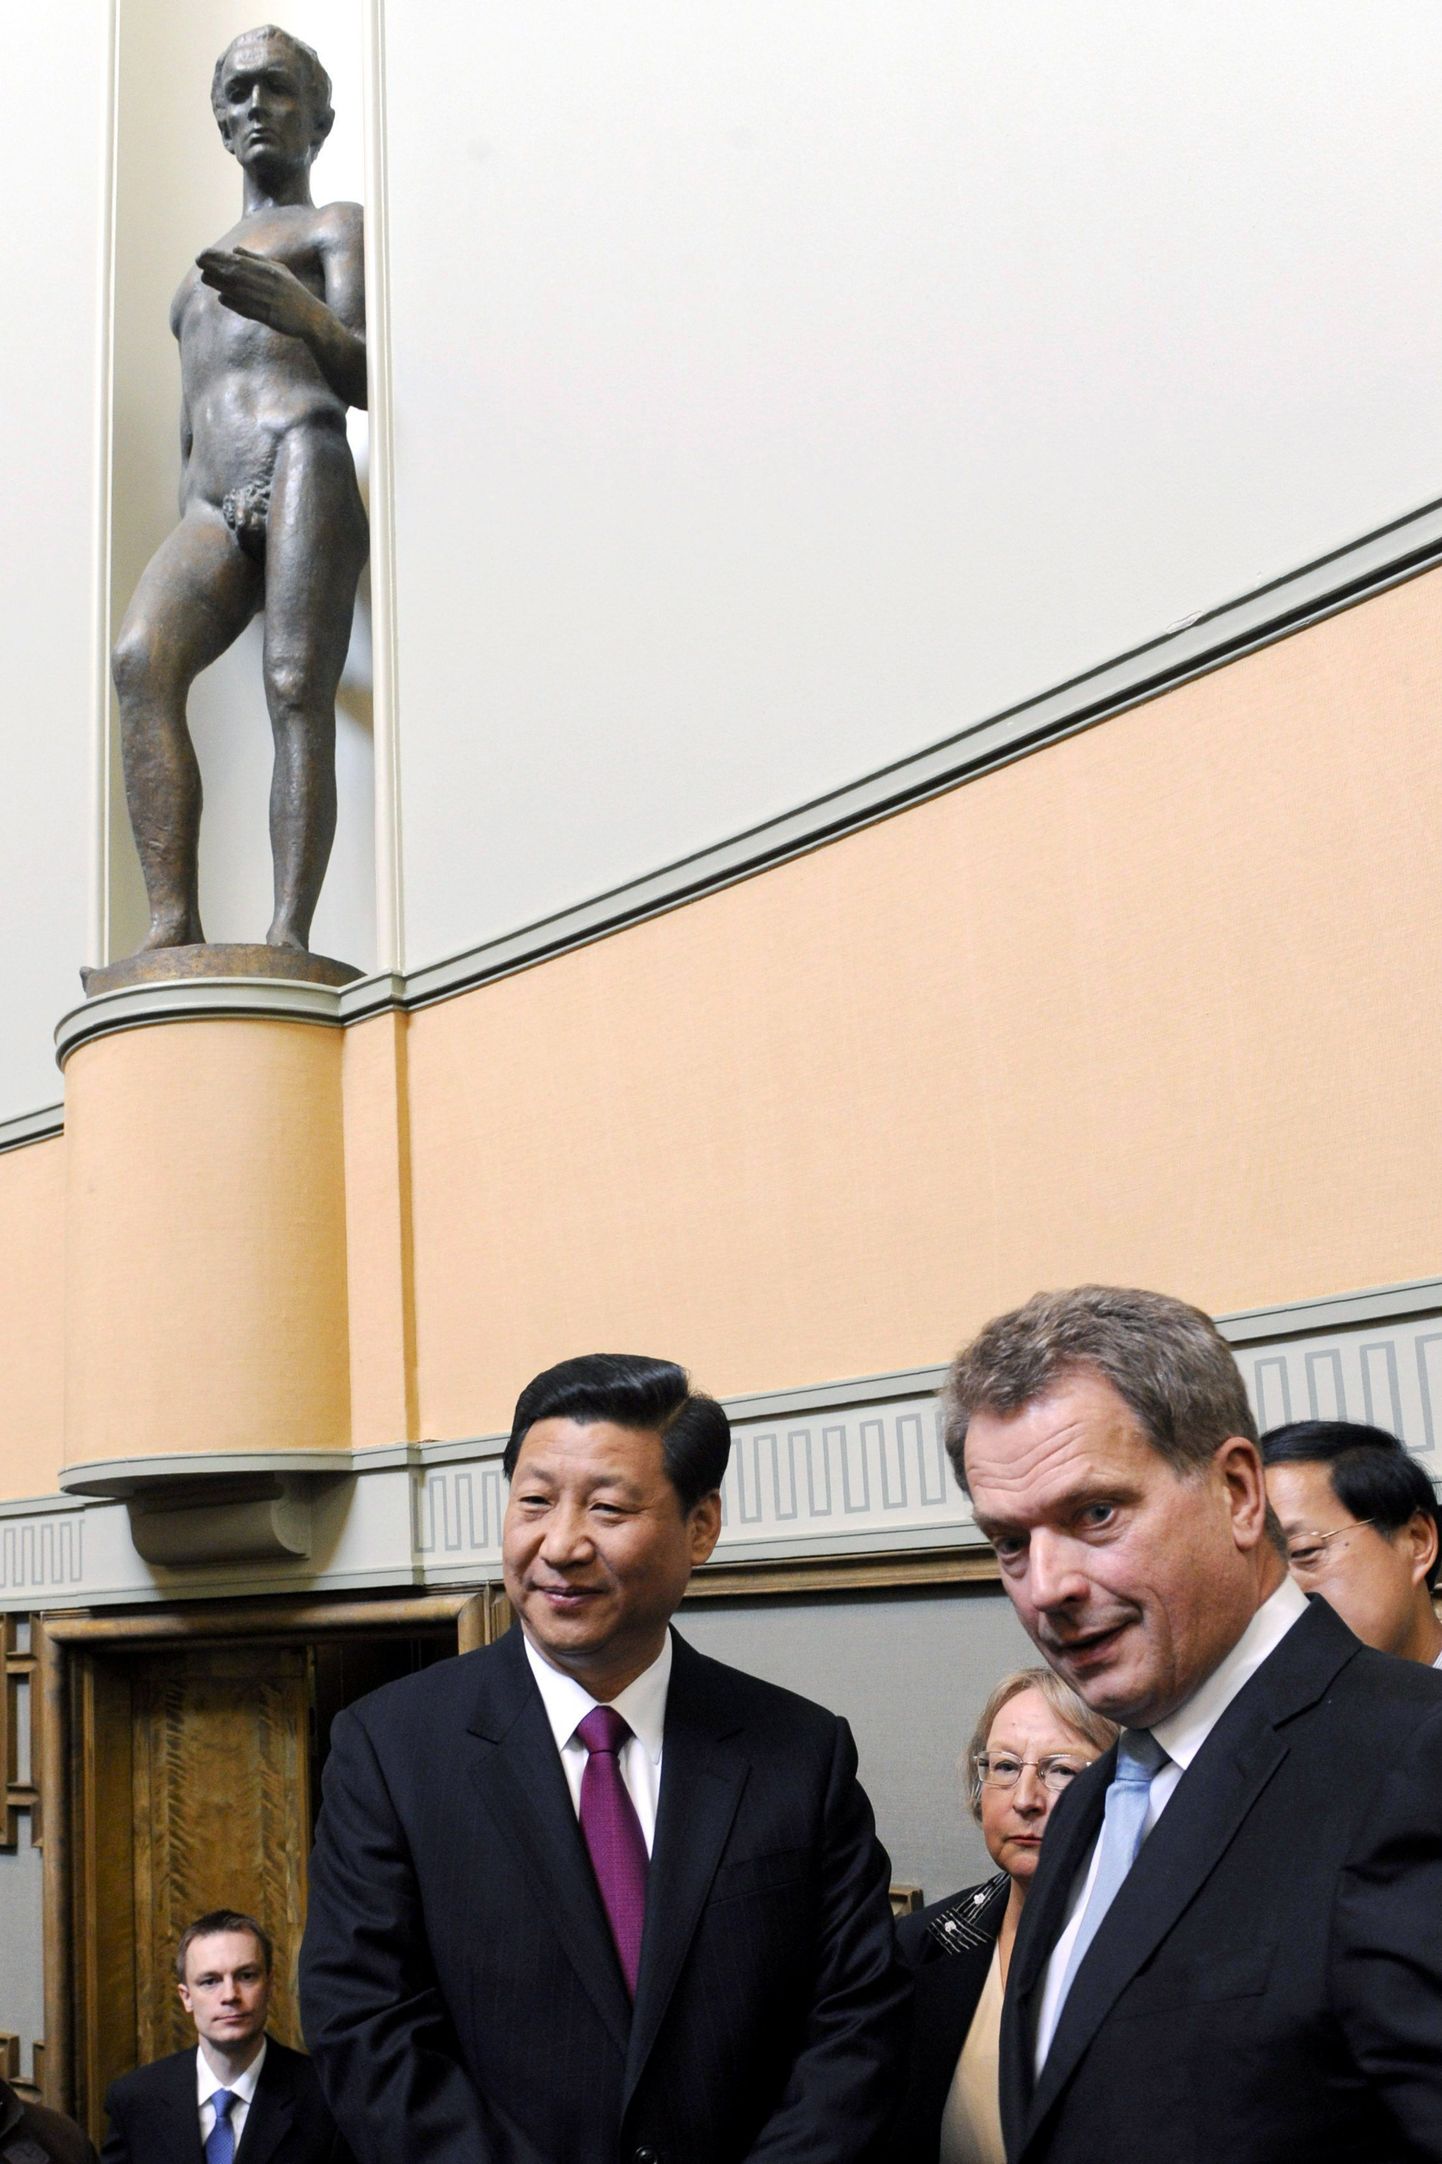 Soome parlamendi spiiker Sauli Niinistö (paremal) koos Hiina asepresidendi Xi Jinpingiga.